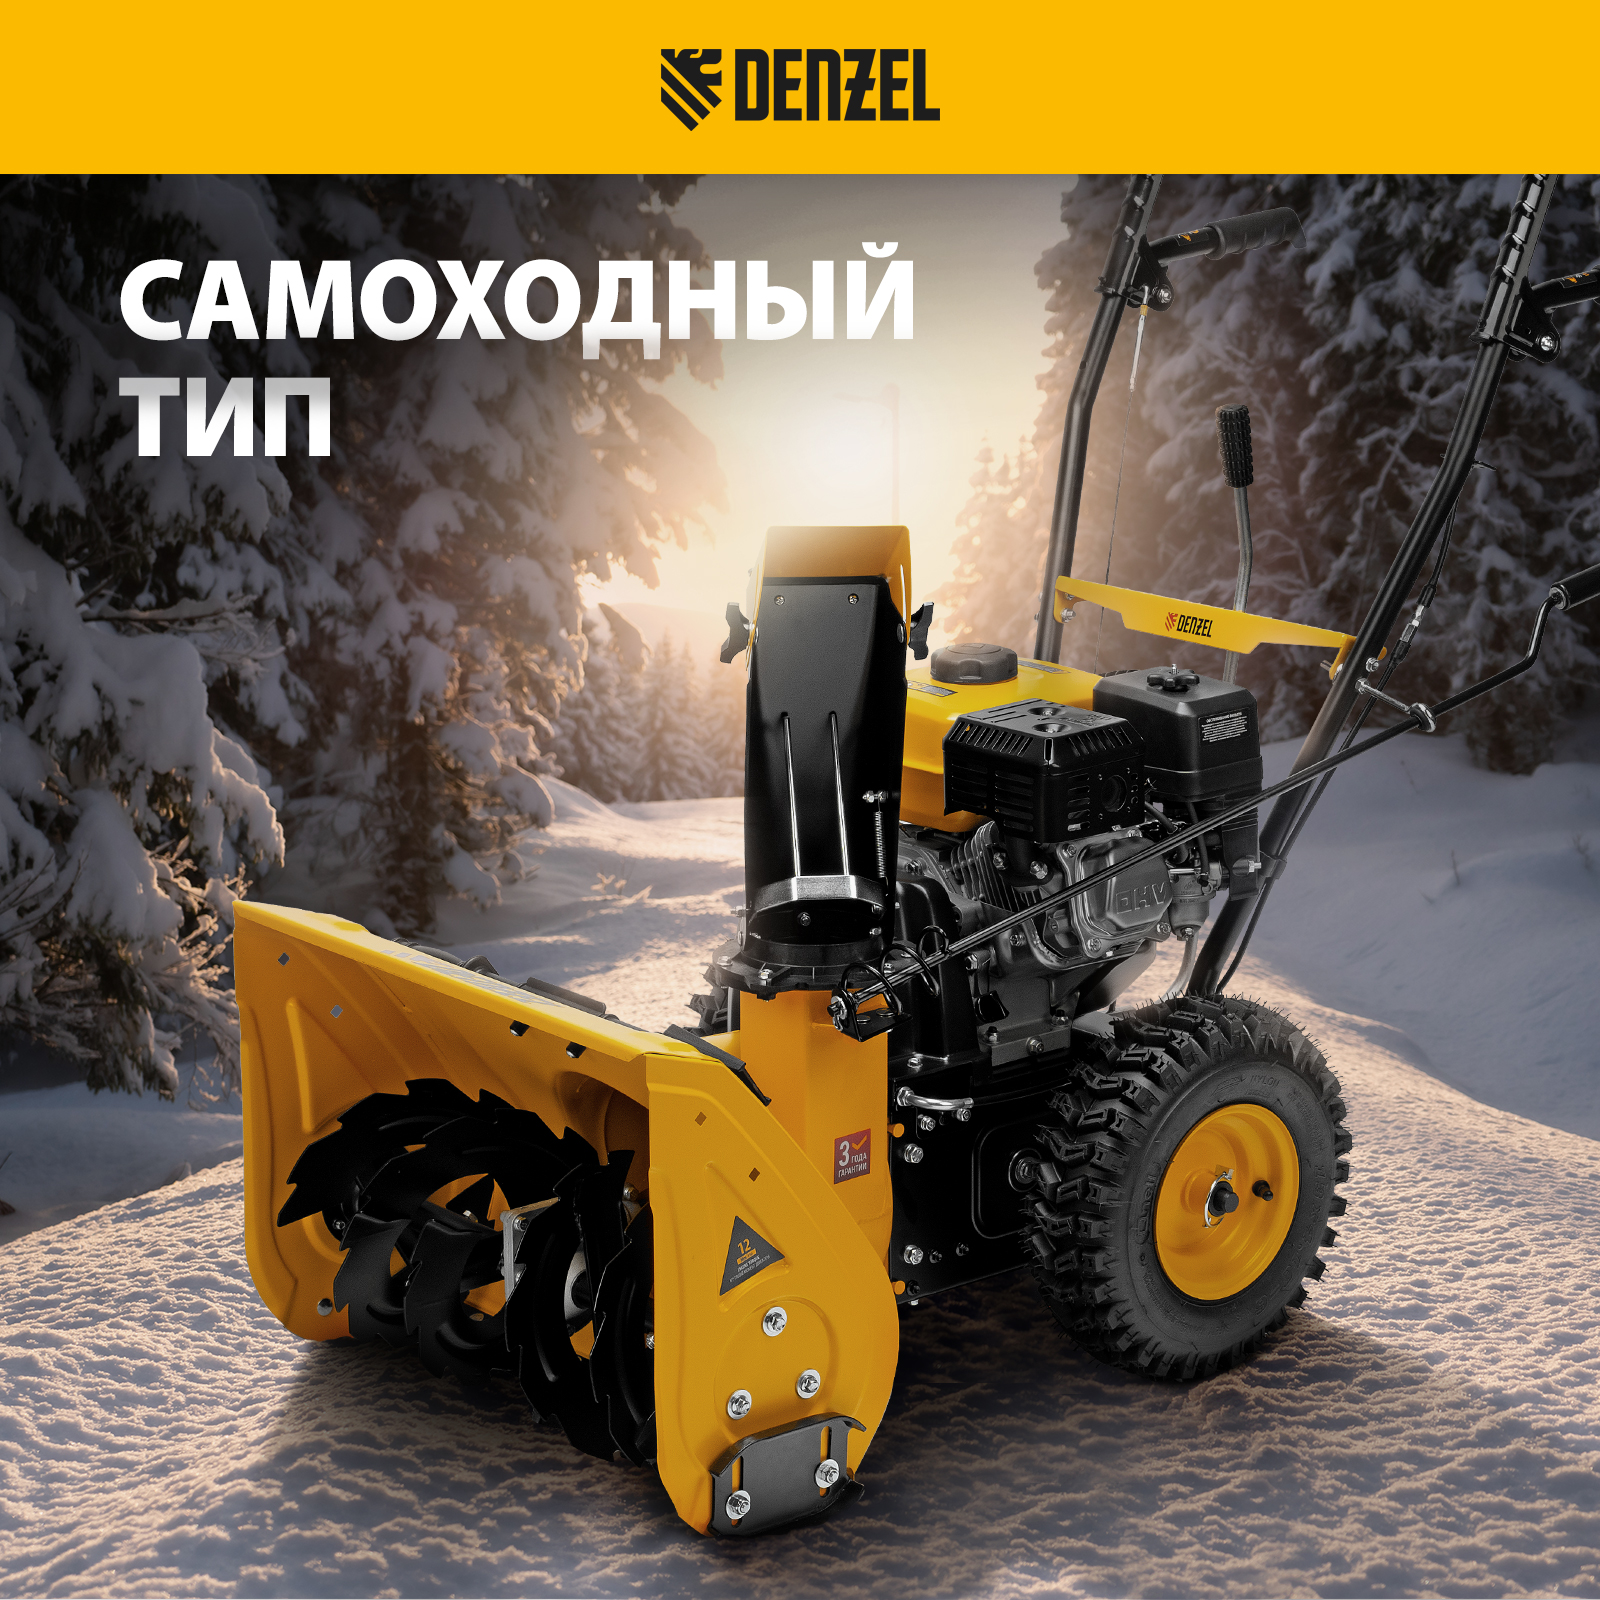 Бензиновая снегоуборочная машина DENZEL SB 560 212 cc 97651 7 л.с .